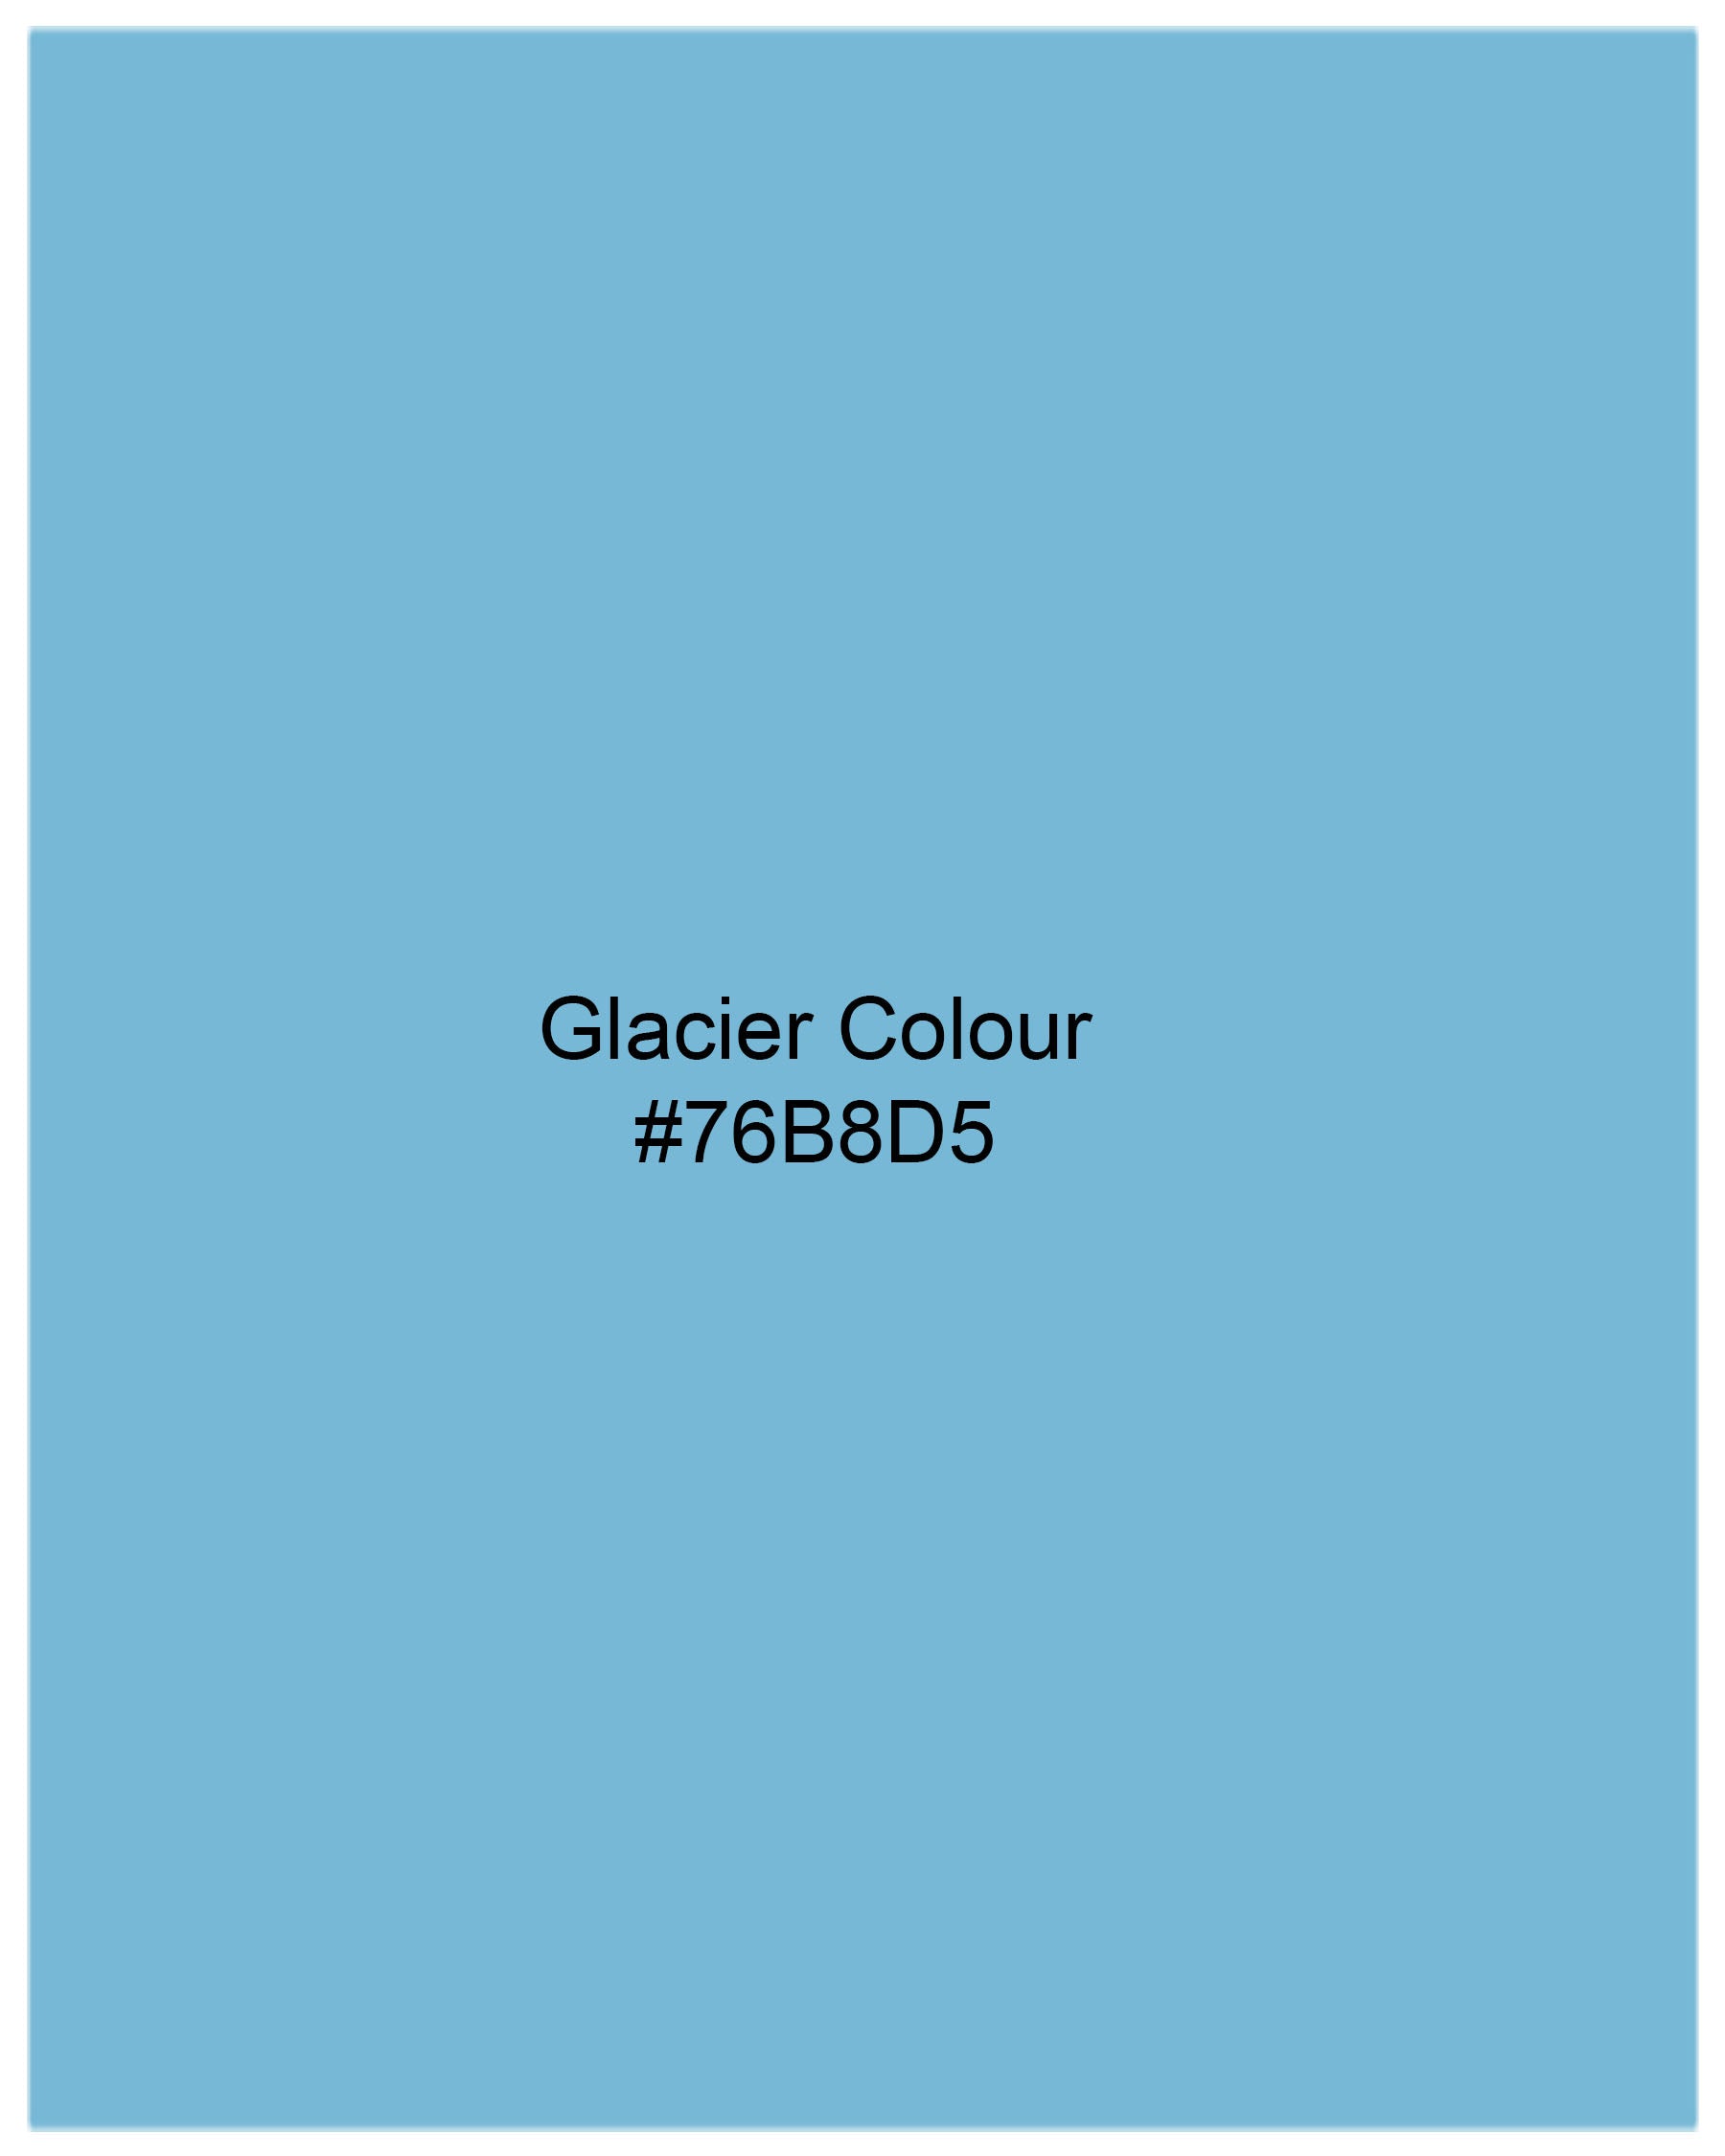 Glacier Blue Royal Oxford Shirt 7734-BD-38,7734-BD-38,7734-BD-39,7734-BD-39,7734-BD-40,7734-BD-40,7734-BD-42,7734-BD-42,7734-BD-44,7734-BD-44,7734-BD-46,7734-BD-46,7734-BD-48,7734-BD-48,7734-BD-50,7734-BD-50,7734-BD-52,7734-BD-52